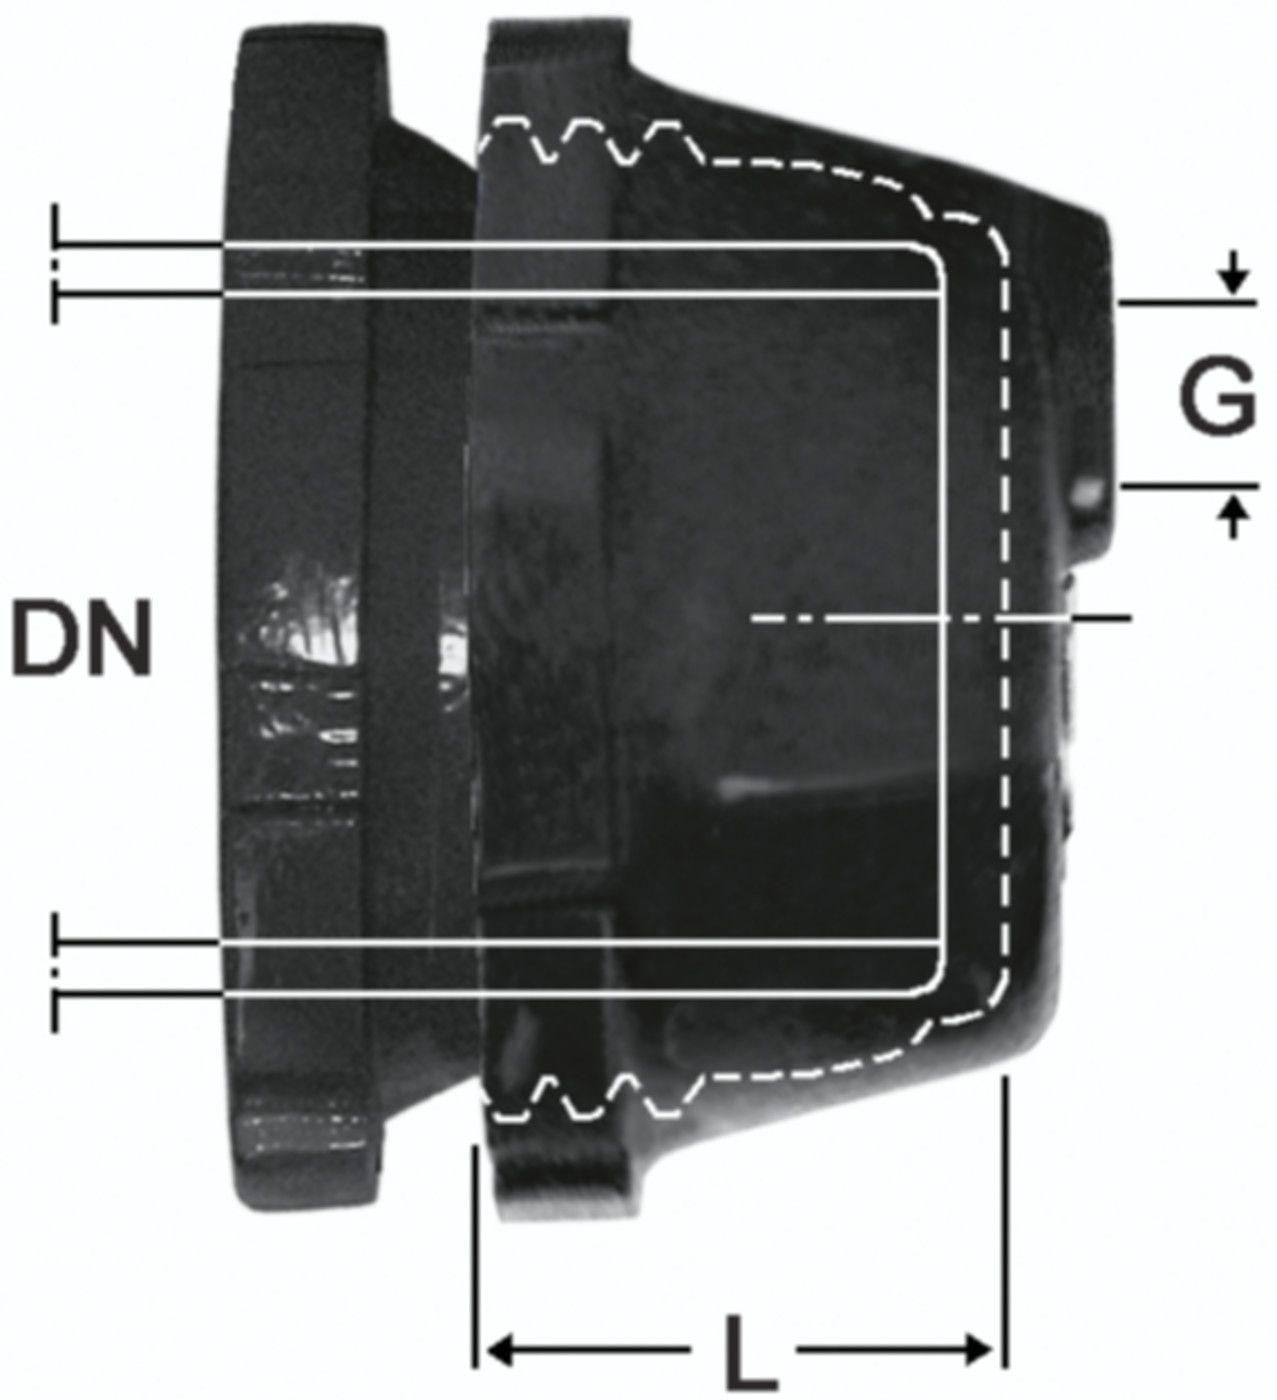 SM-Verschlusskappe Fig. 2395 DN 40 - 1 1/4" - Von Roll Schraubmuffenformstücke